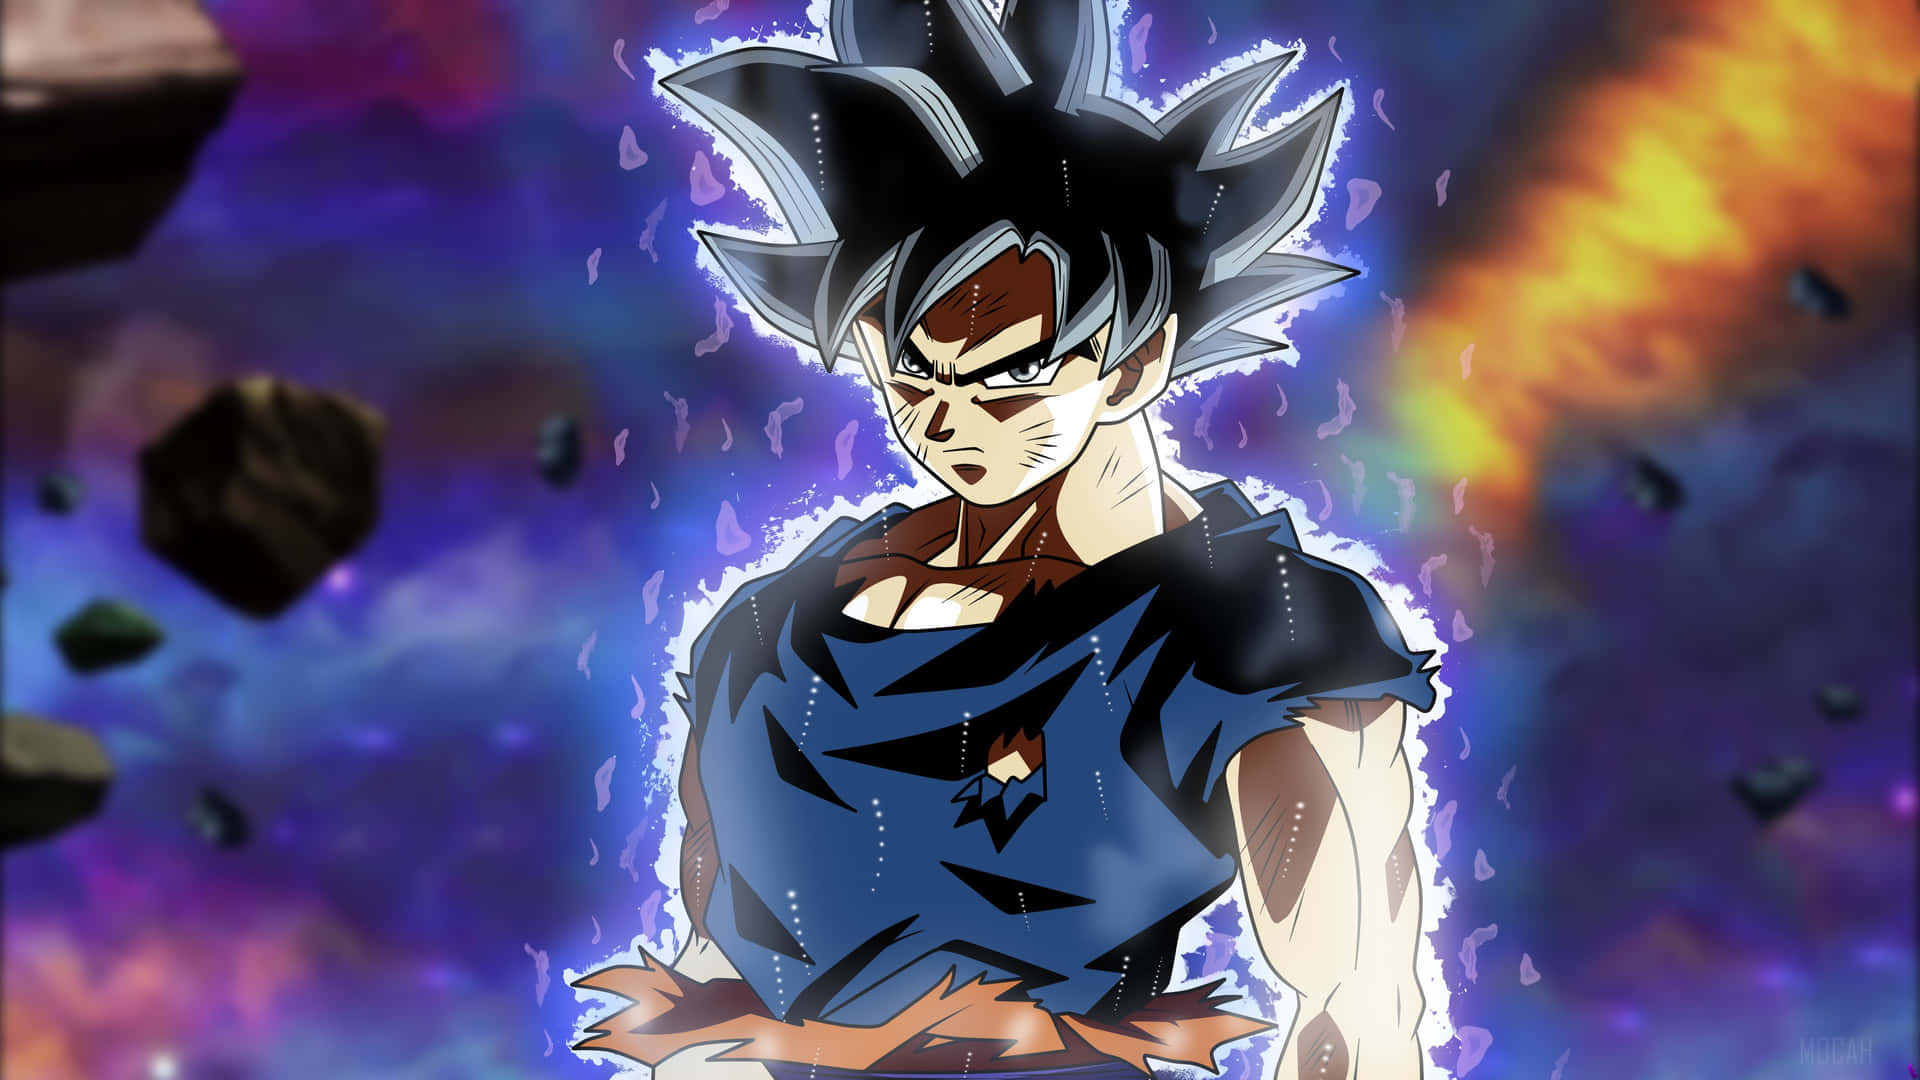 Imagende Goku Transformándose En Ultra Instinto.